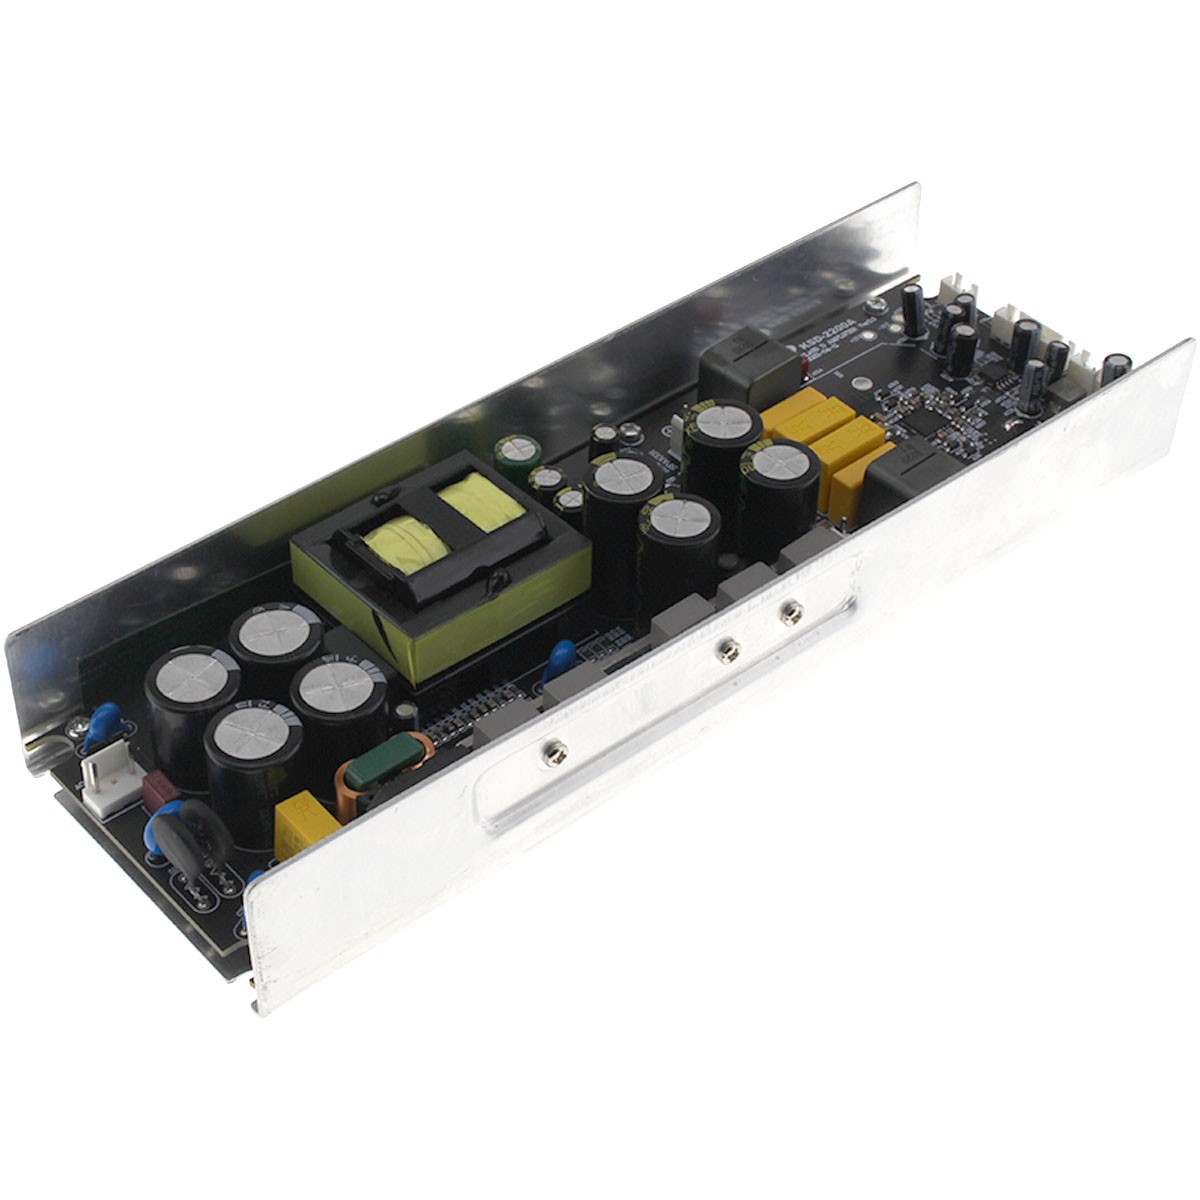 Amplifier Module Stereo Class D Infineon MA5332 2x125W 4 Ohm